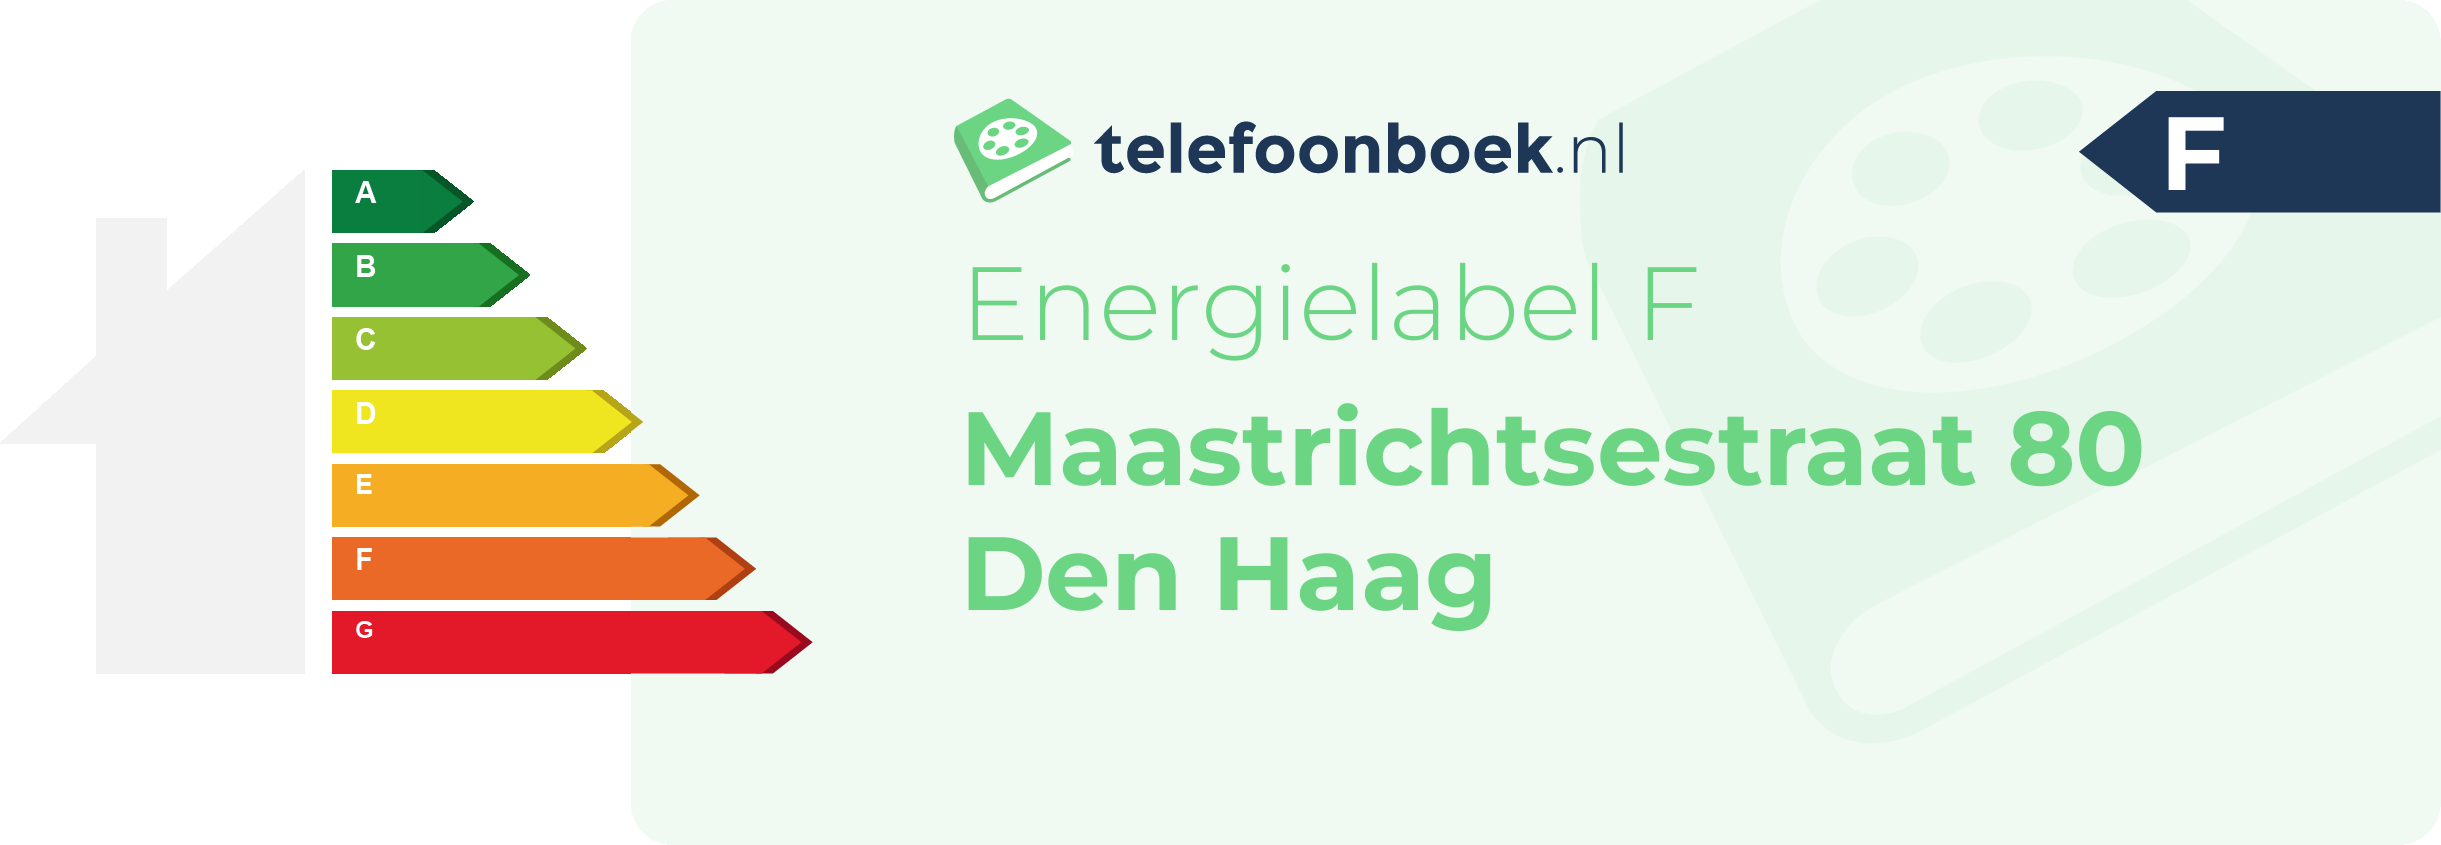 Energielabel Maastrichtsestraat 80 Den Haag